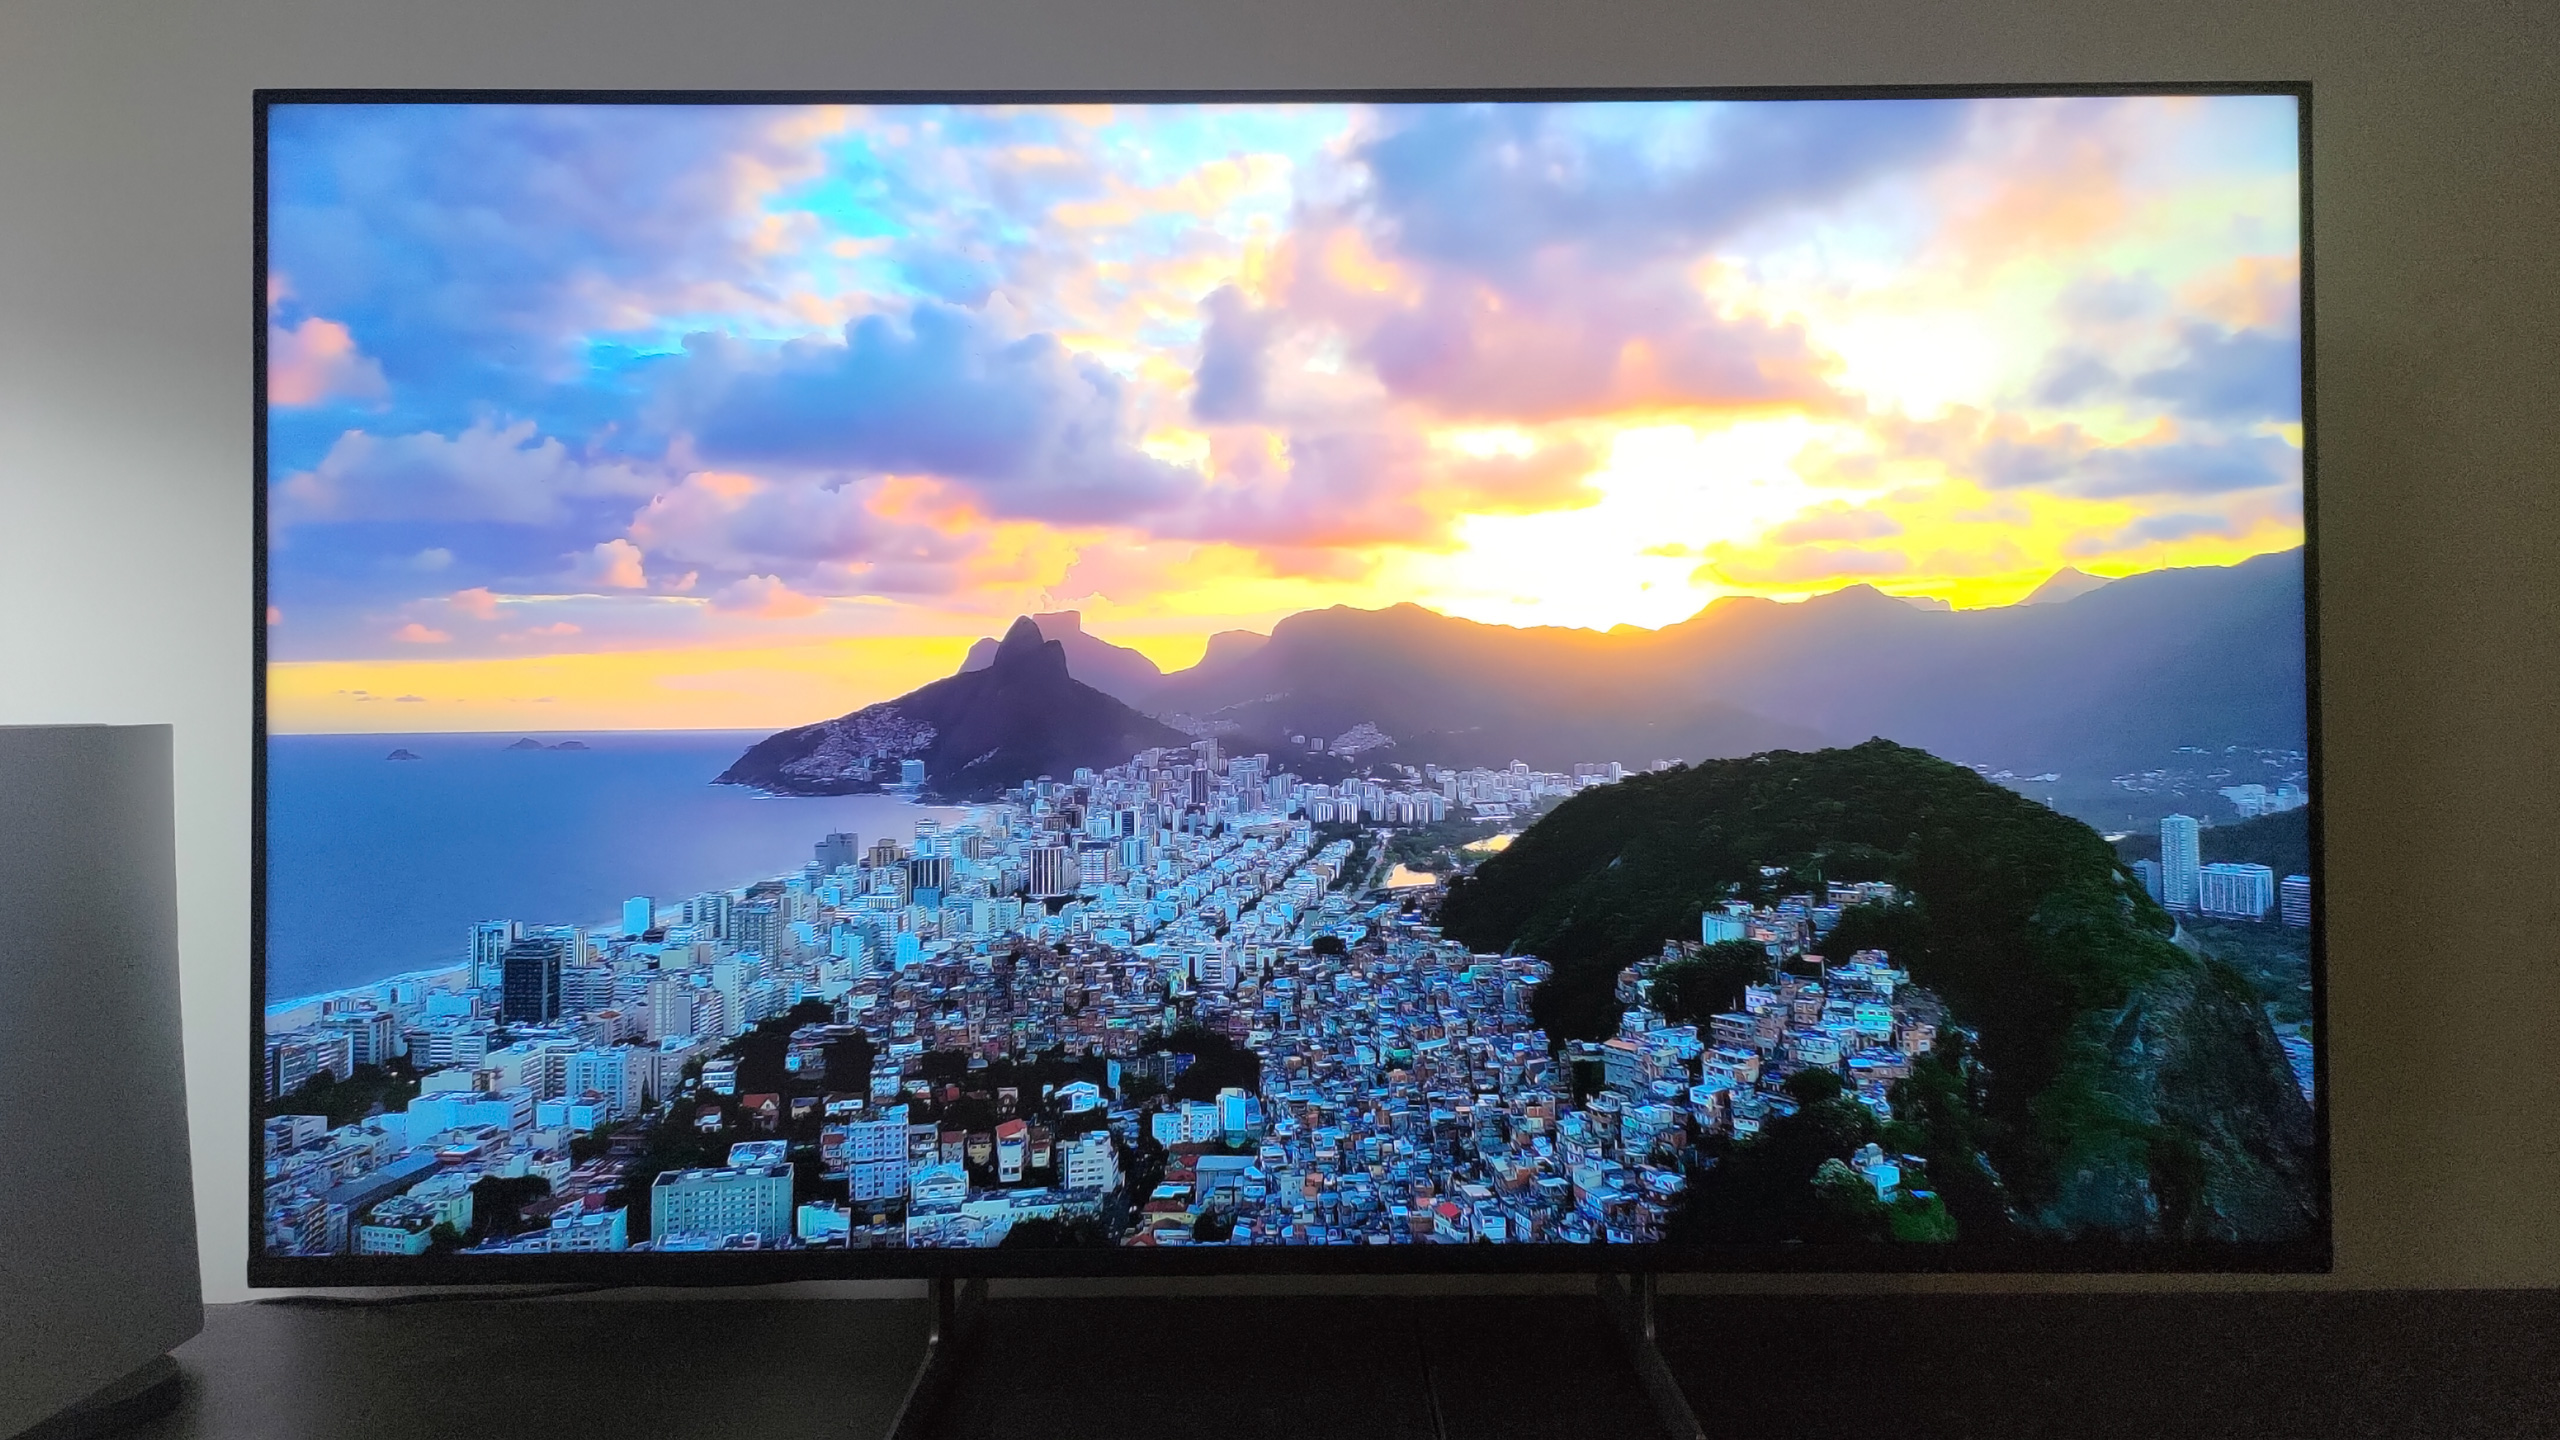 Sony Bravia X85L: Påkostad mellanklass-tv med högklassig bild